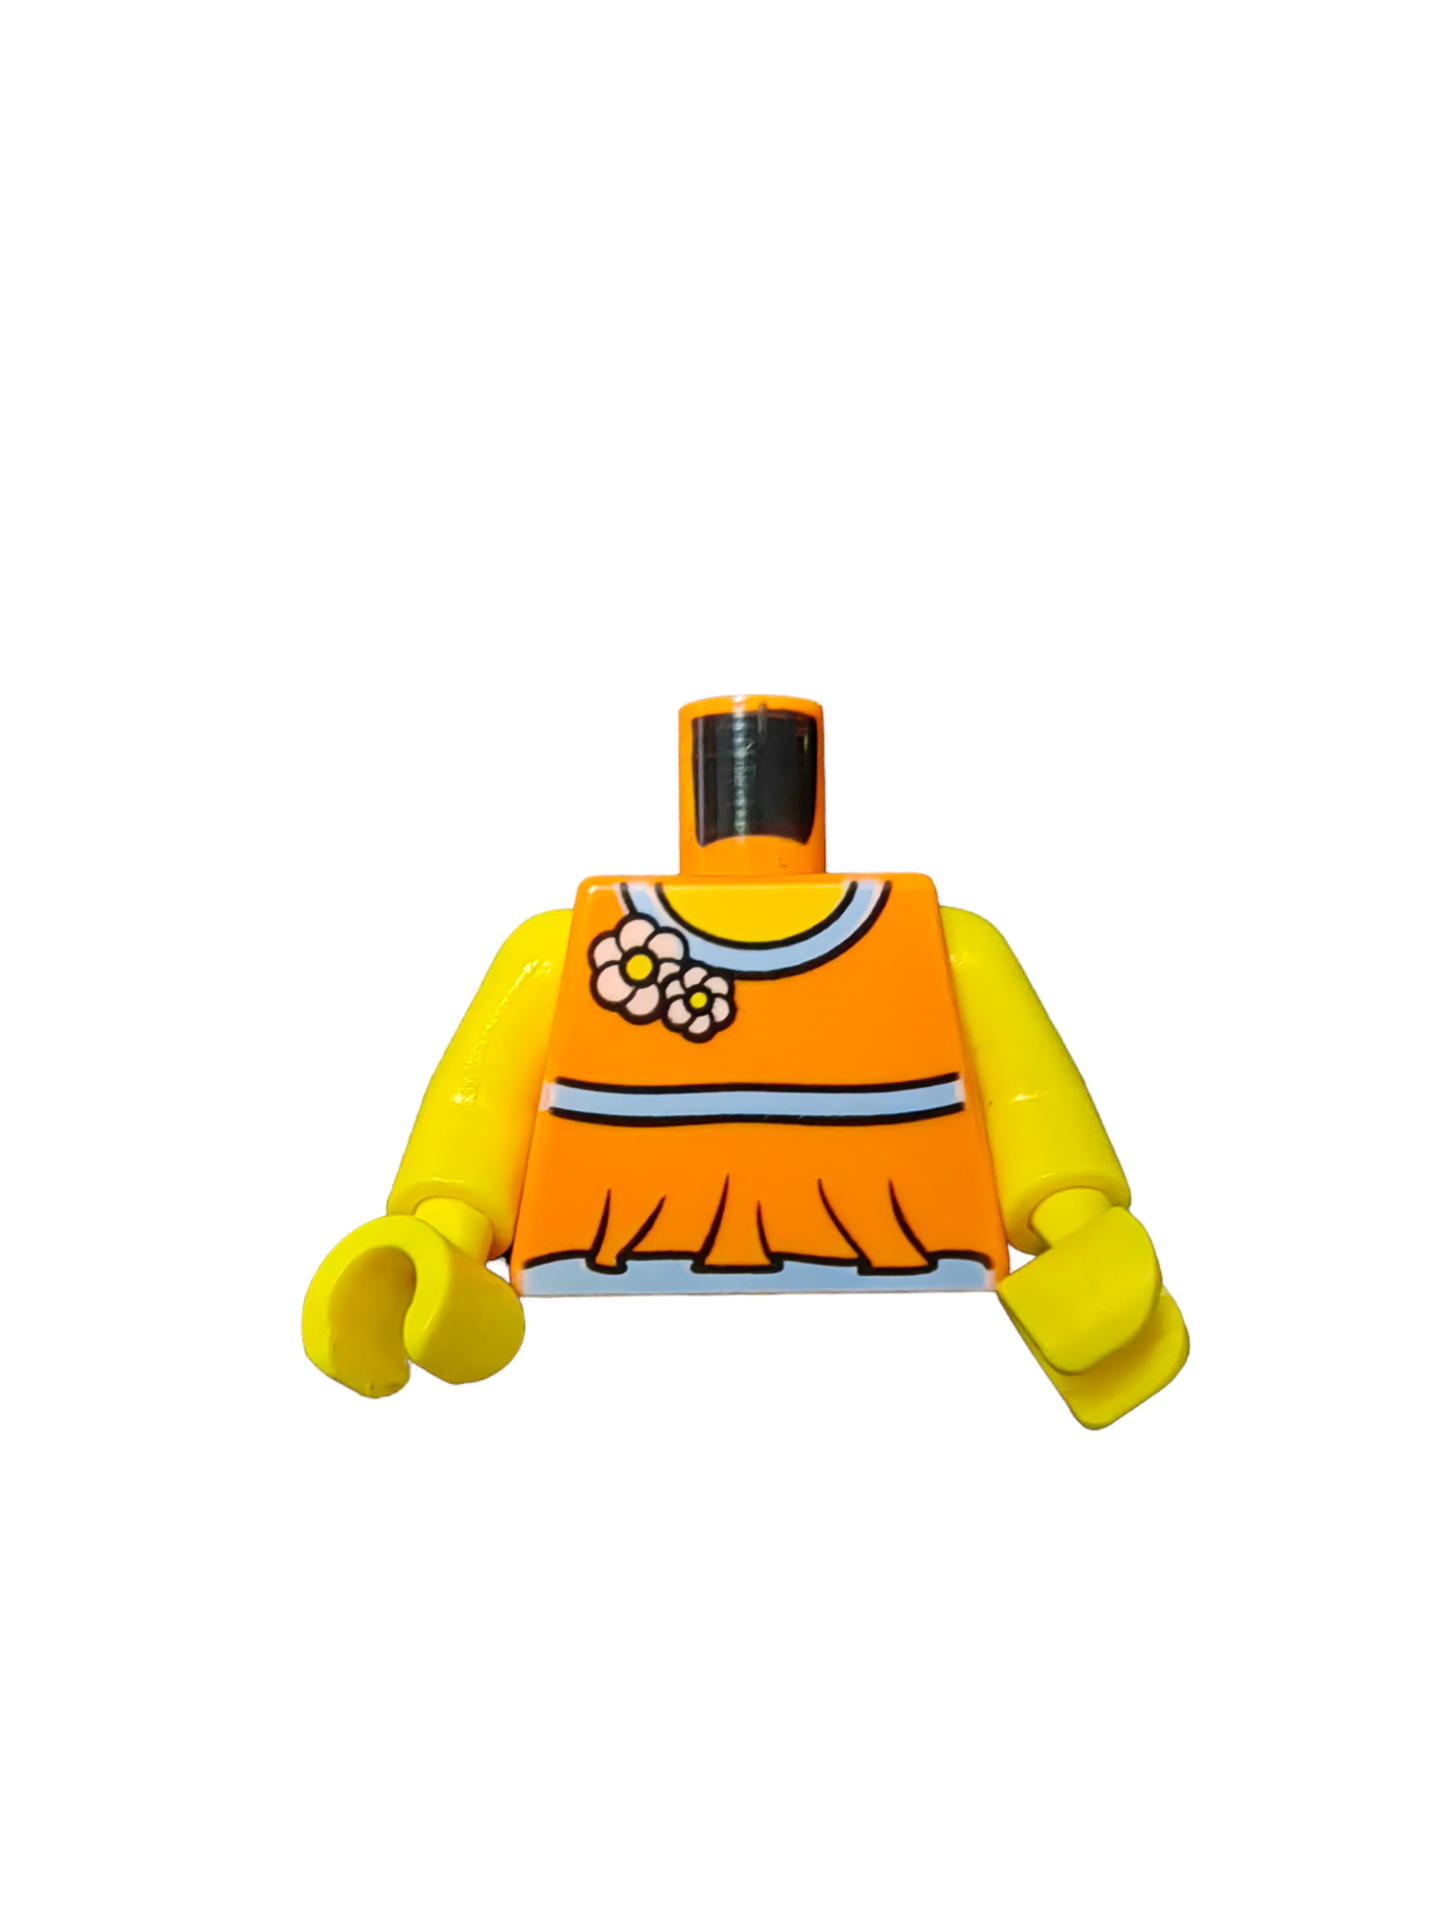 LEGO Torso, Orange Top with Flowers - UB1130